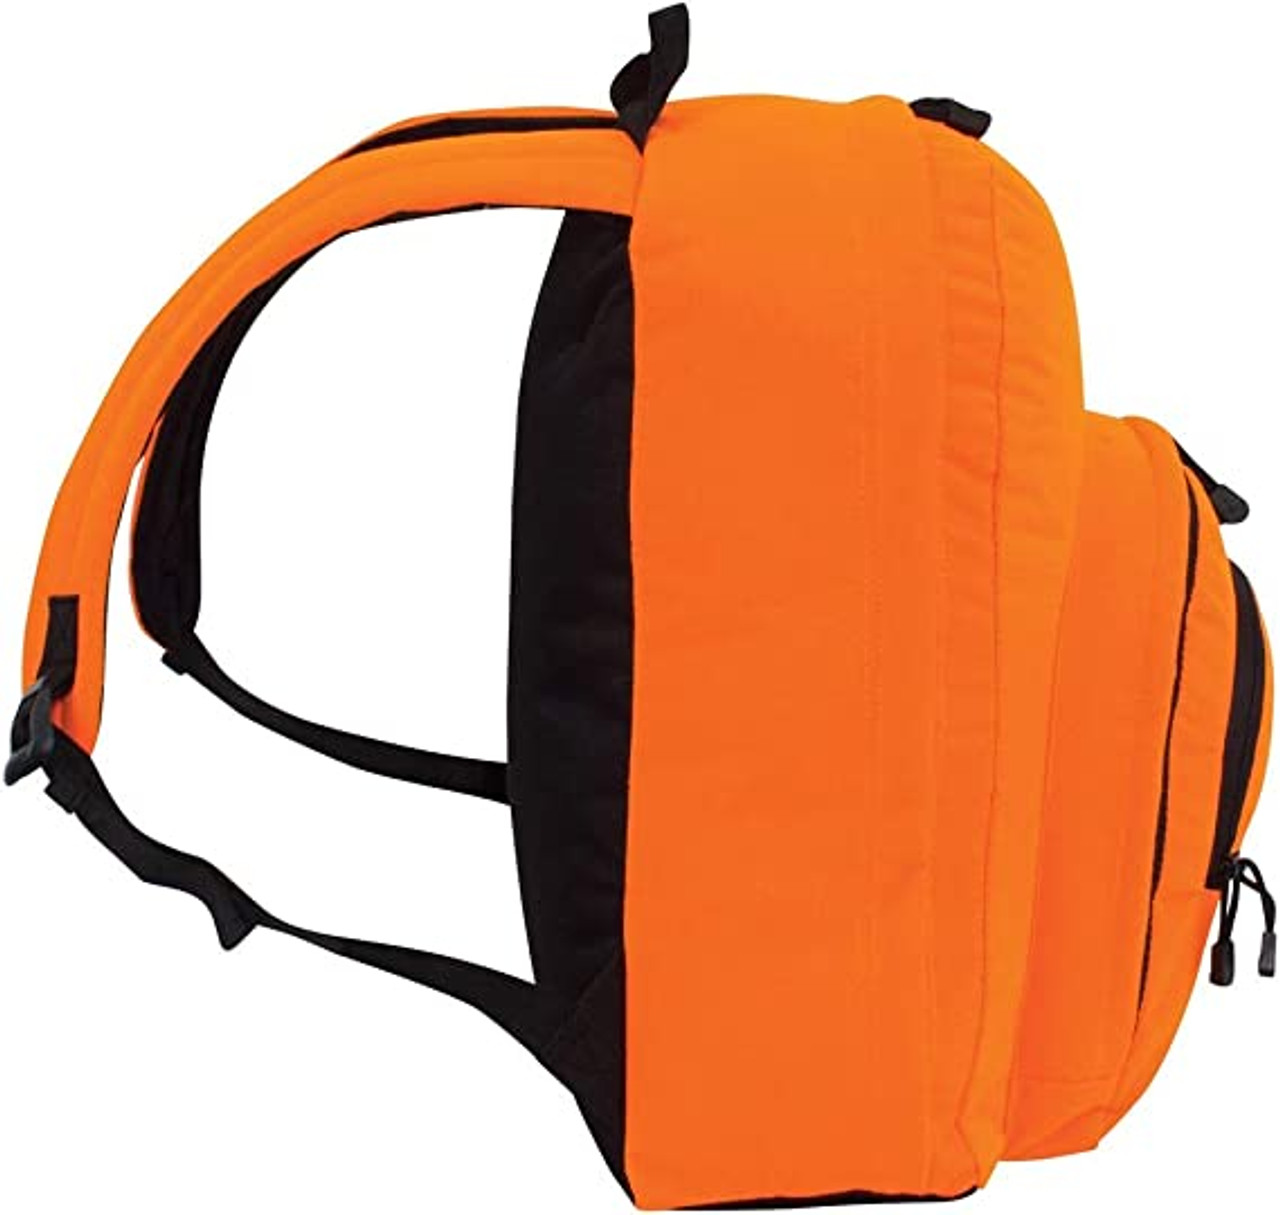 Fieldline Pro Series Explorer II Backpack Blaze Orange